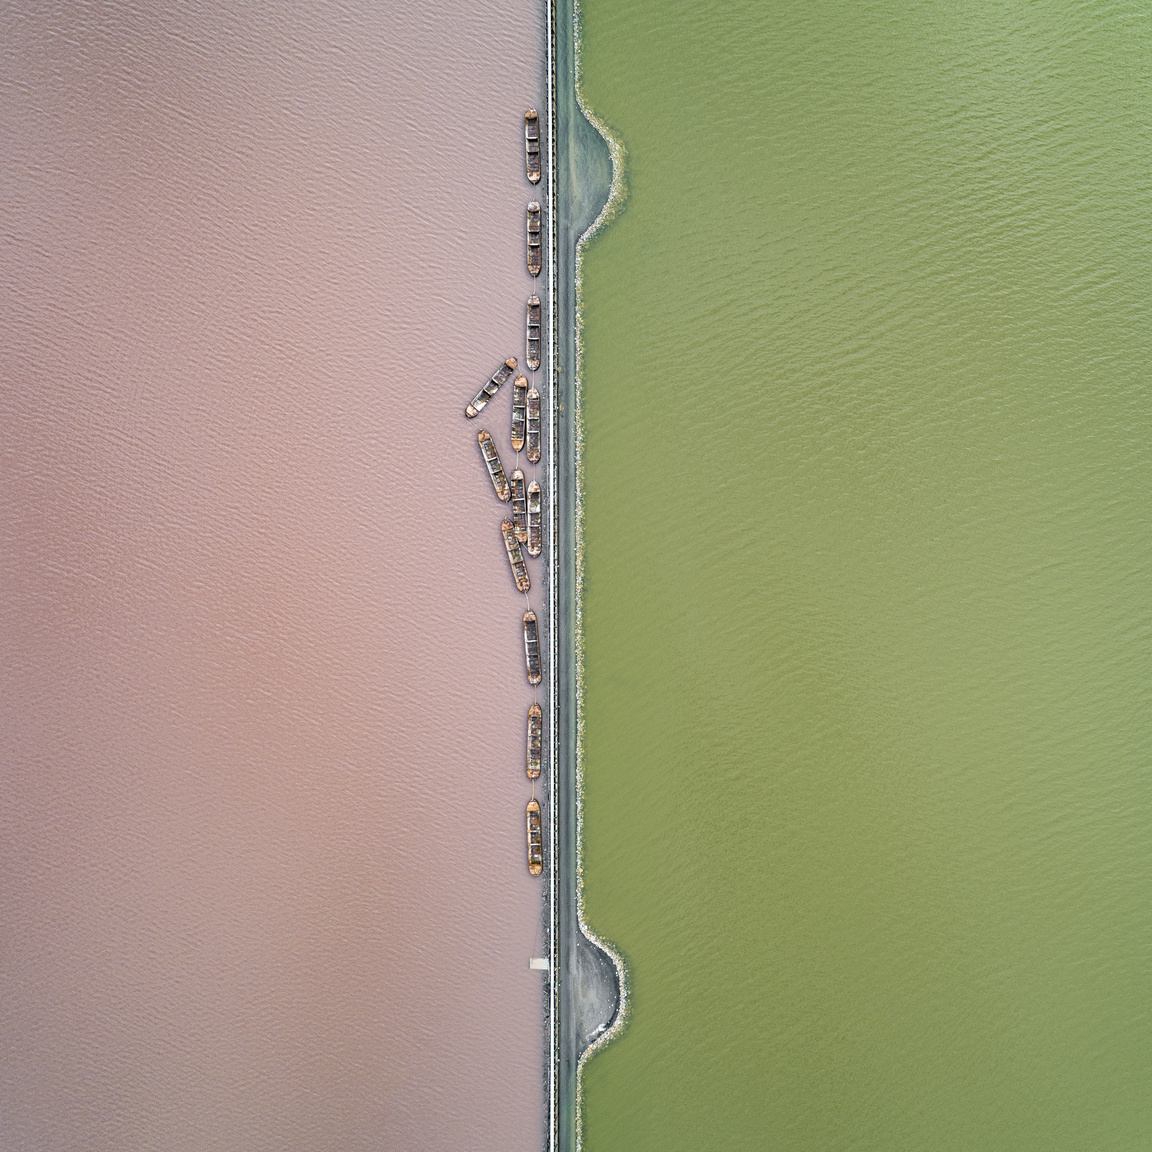 Sókitermelő tavak
                        Mályva és zöldre színezett tavakat keresztez az a sínrendszer, amely munkaidőben fém csónakokat húz a tó közepéből a partra, ahol a kitermelt sót feldolgozzák.
                        Torrevieja, Alicante, Spanyolország, 2019